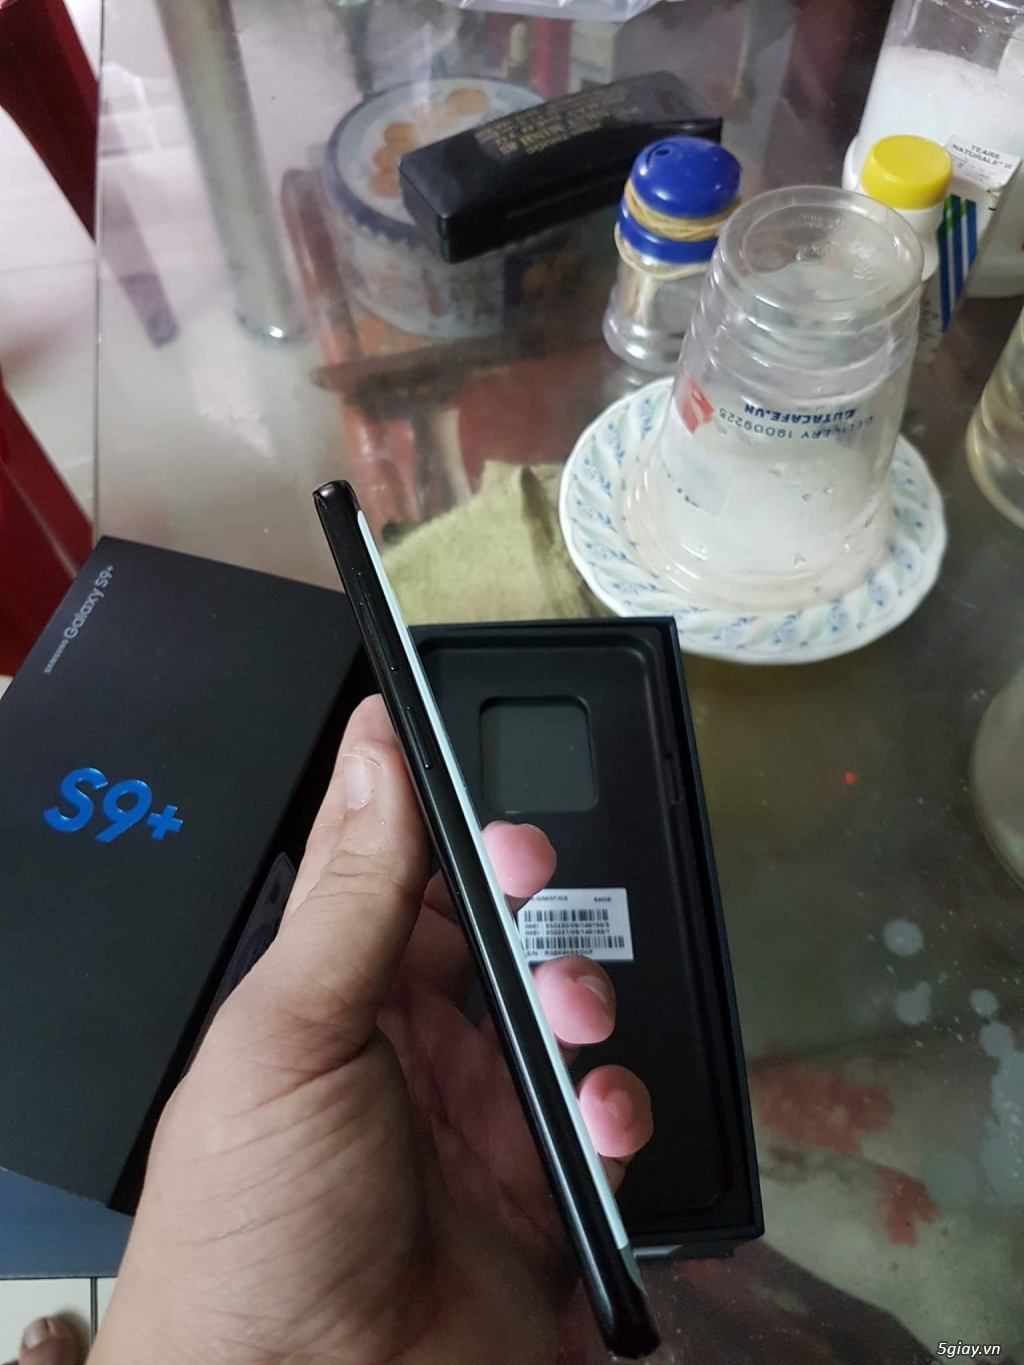 S9 plus đen 128gb 2 sim, Samsung Việt Nam bảo hành 5/2019 - 4